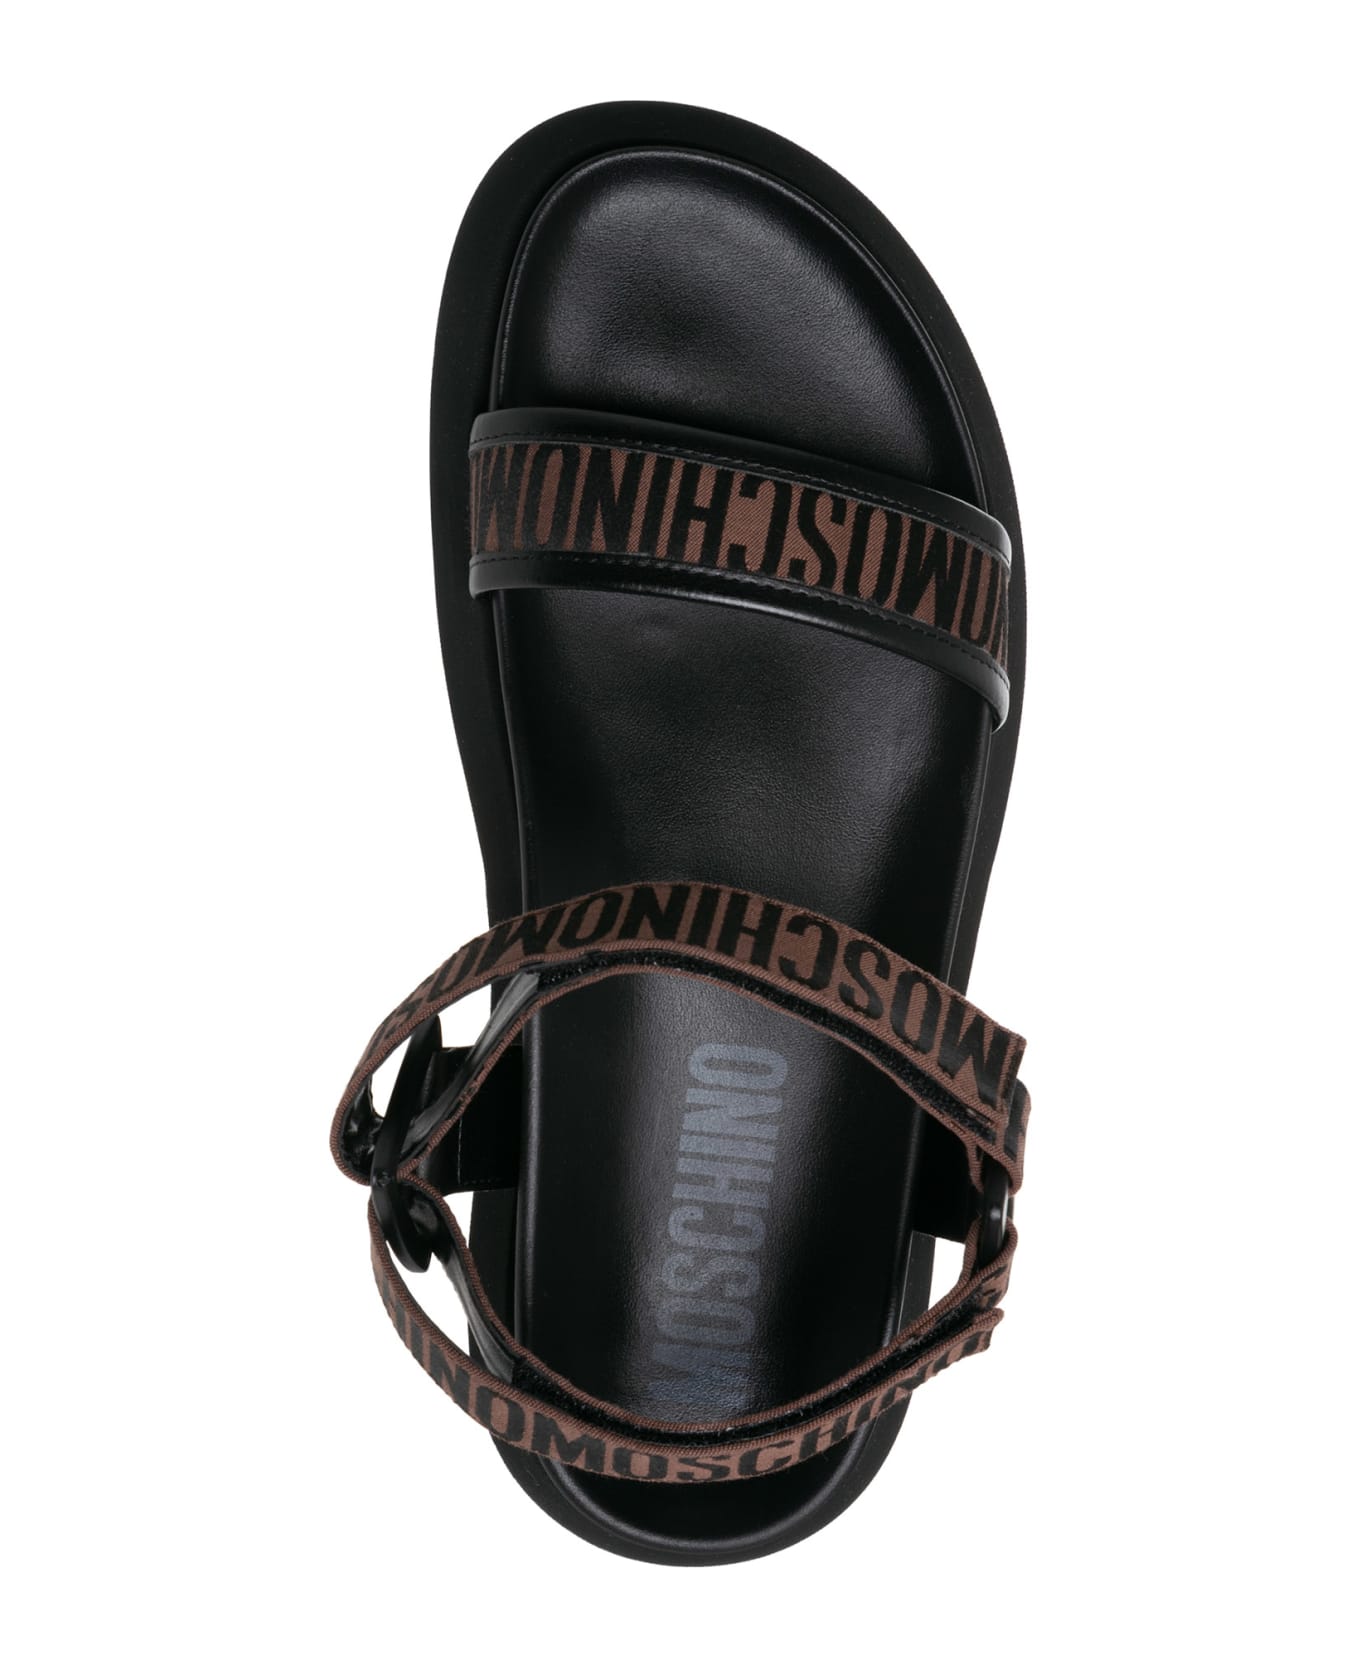 Moschino Logo Cotton Sandals - Dark Brown - Black